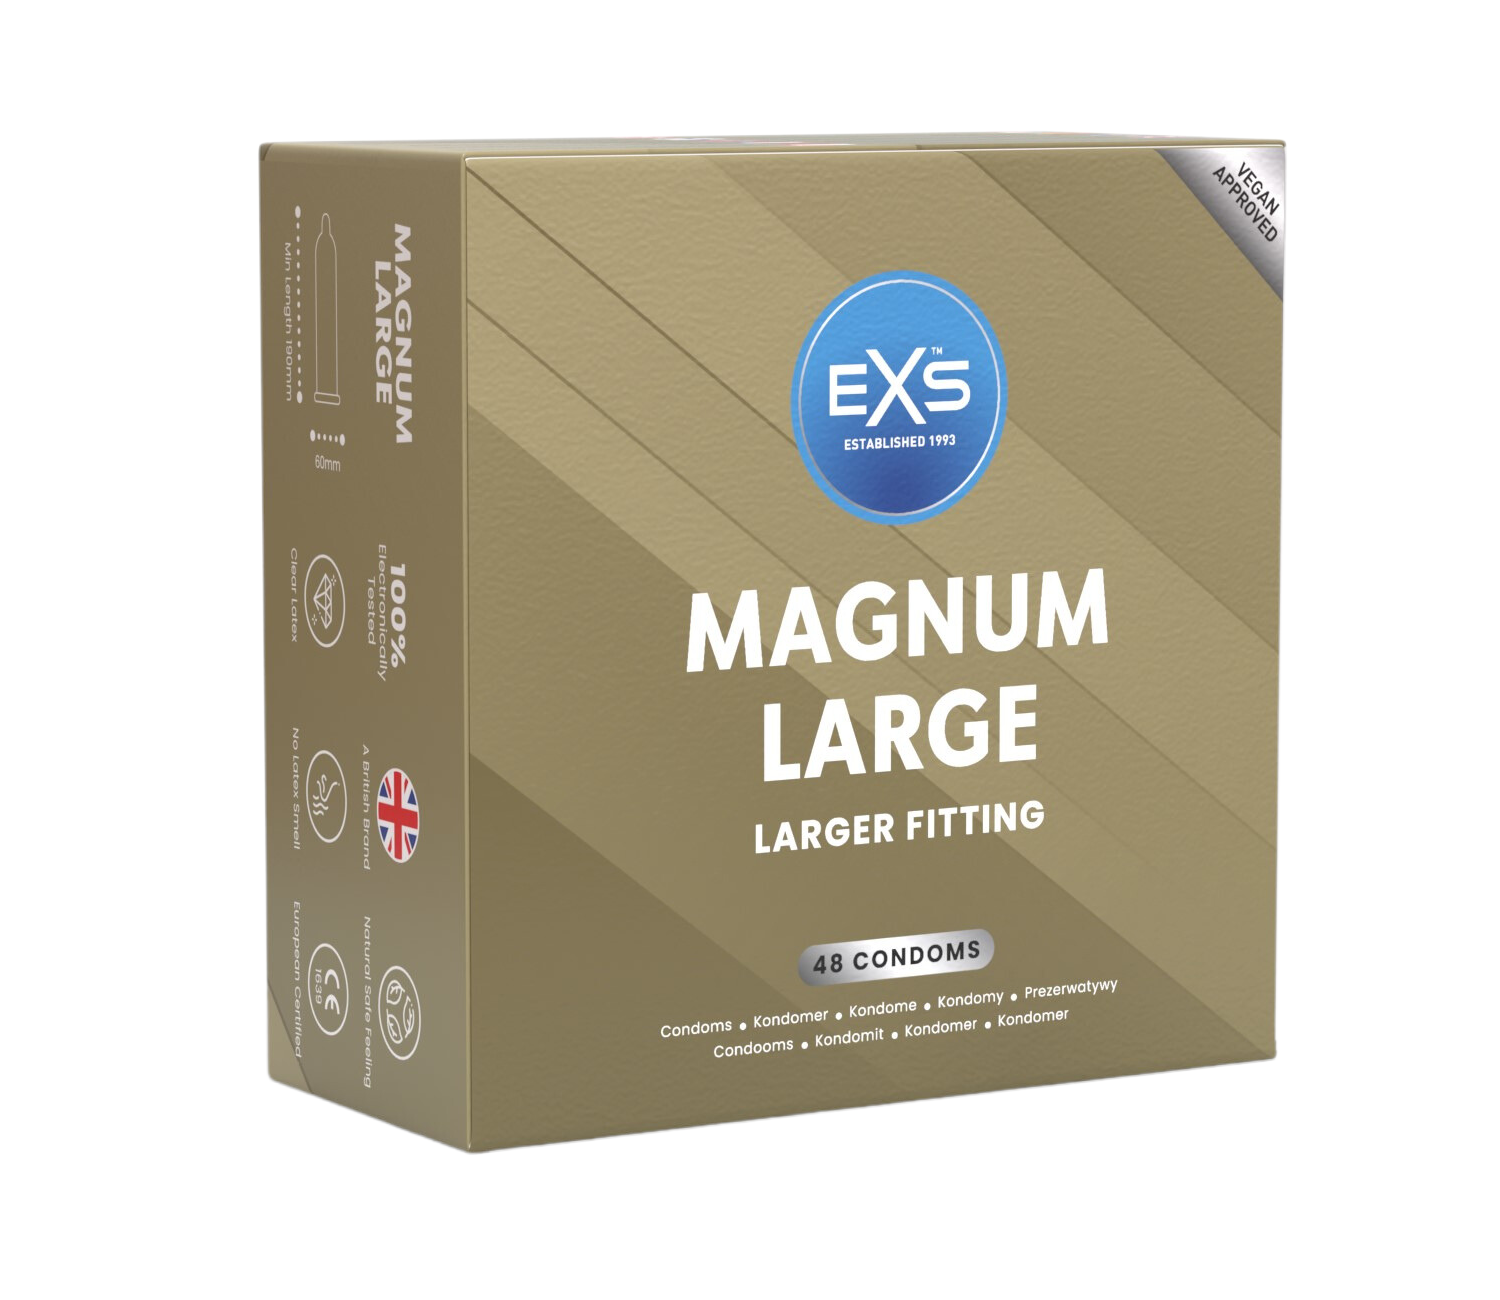 exs condoms magnum large condom image